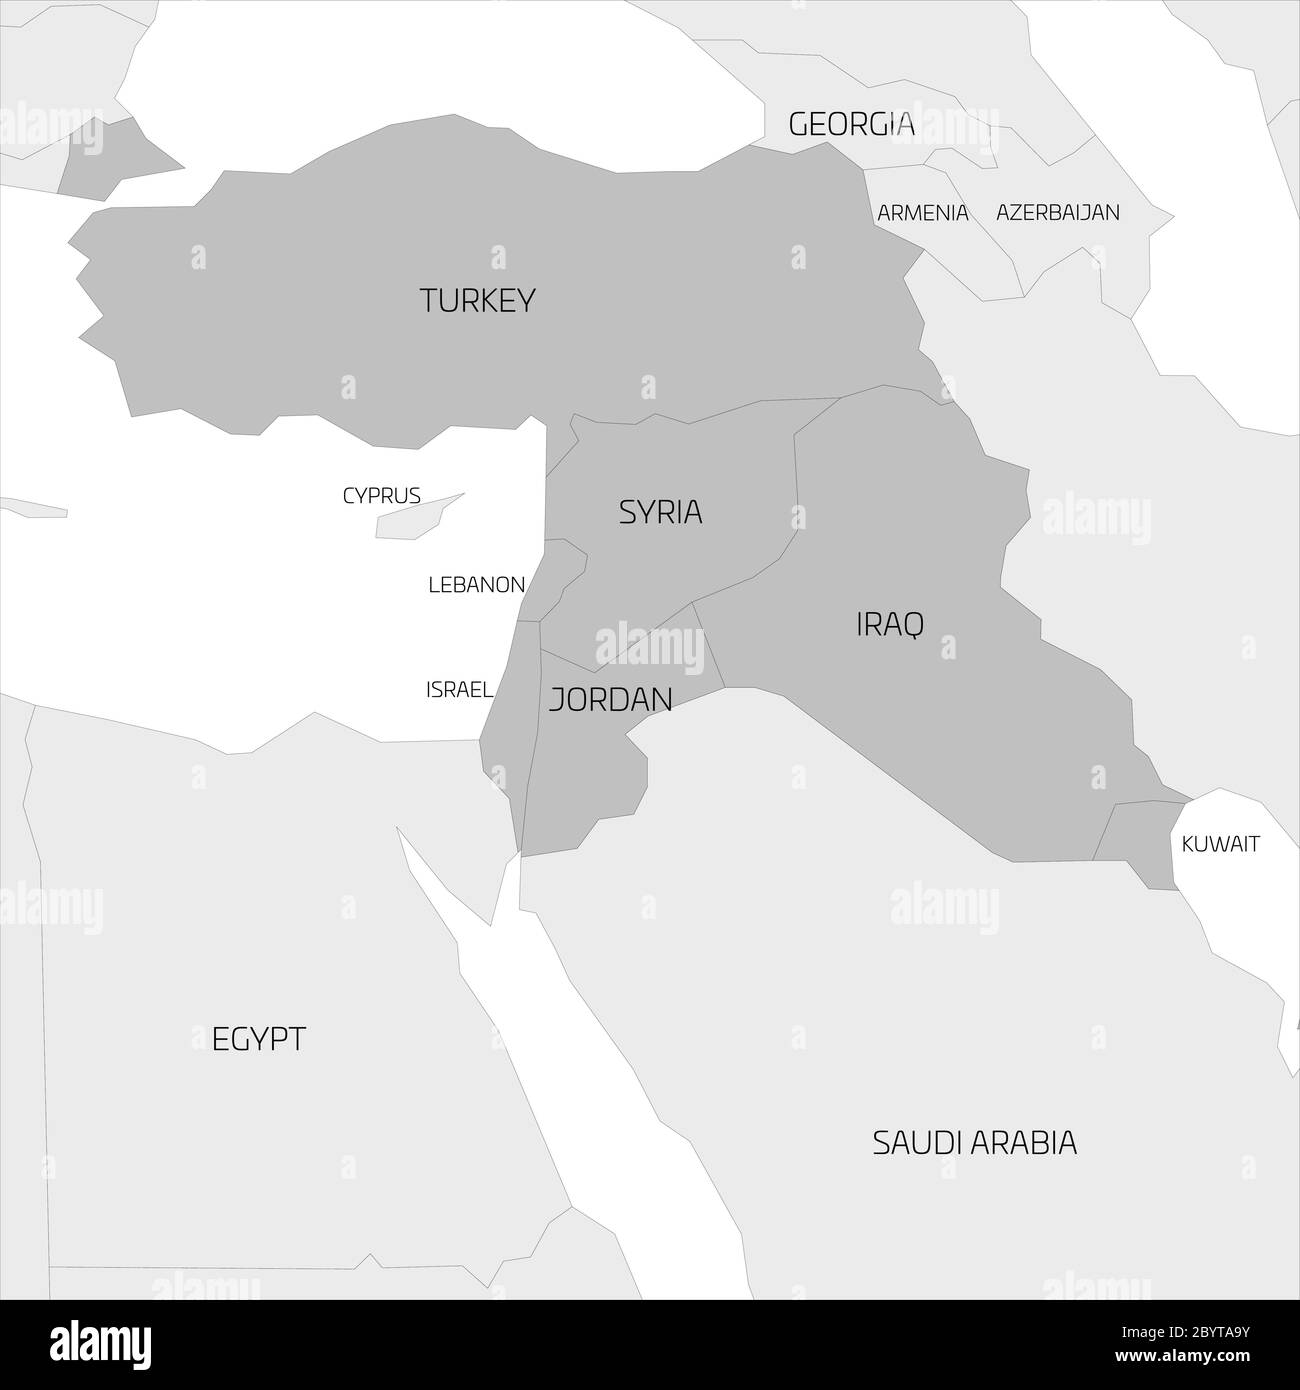 Karte der transkontinentalen Region des Nahen Ostens oder des Nahen Ostens mit Hervorhebung der Türkei, Syrien, Irak, Jordanien, Libanon und Israel. Flache graue Karte mit dünnen schwarzen Bordüren. Stock Vektor